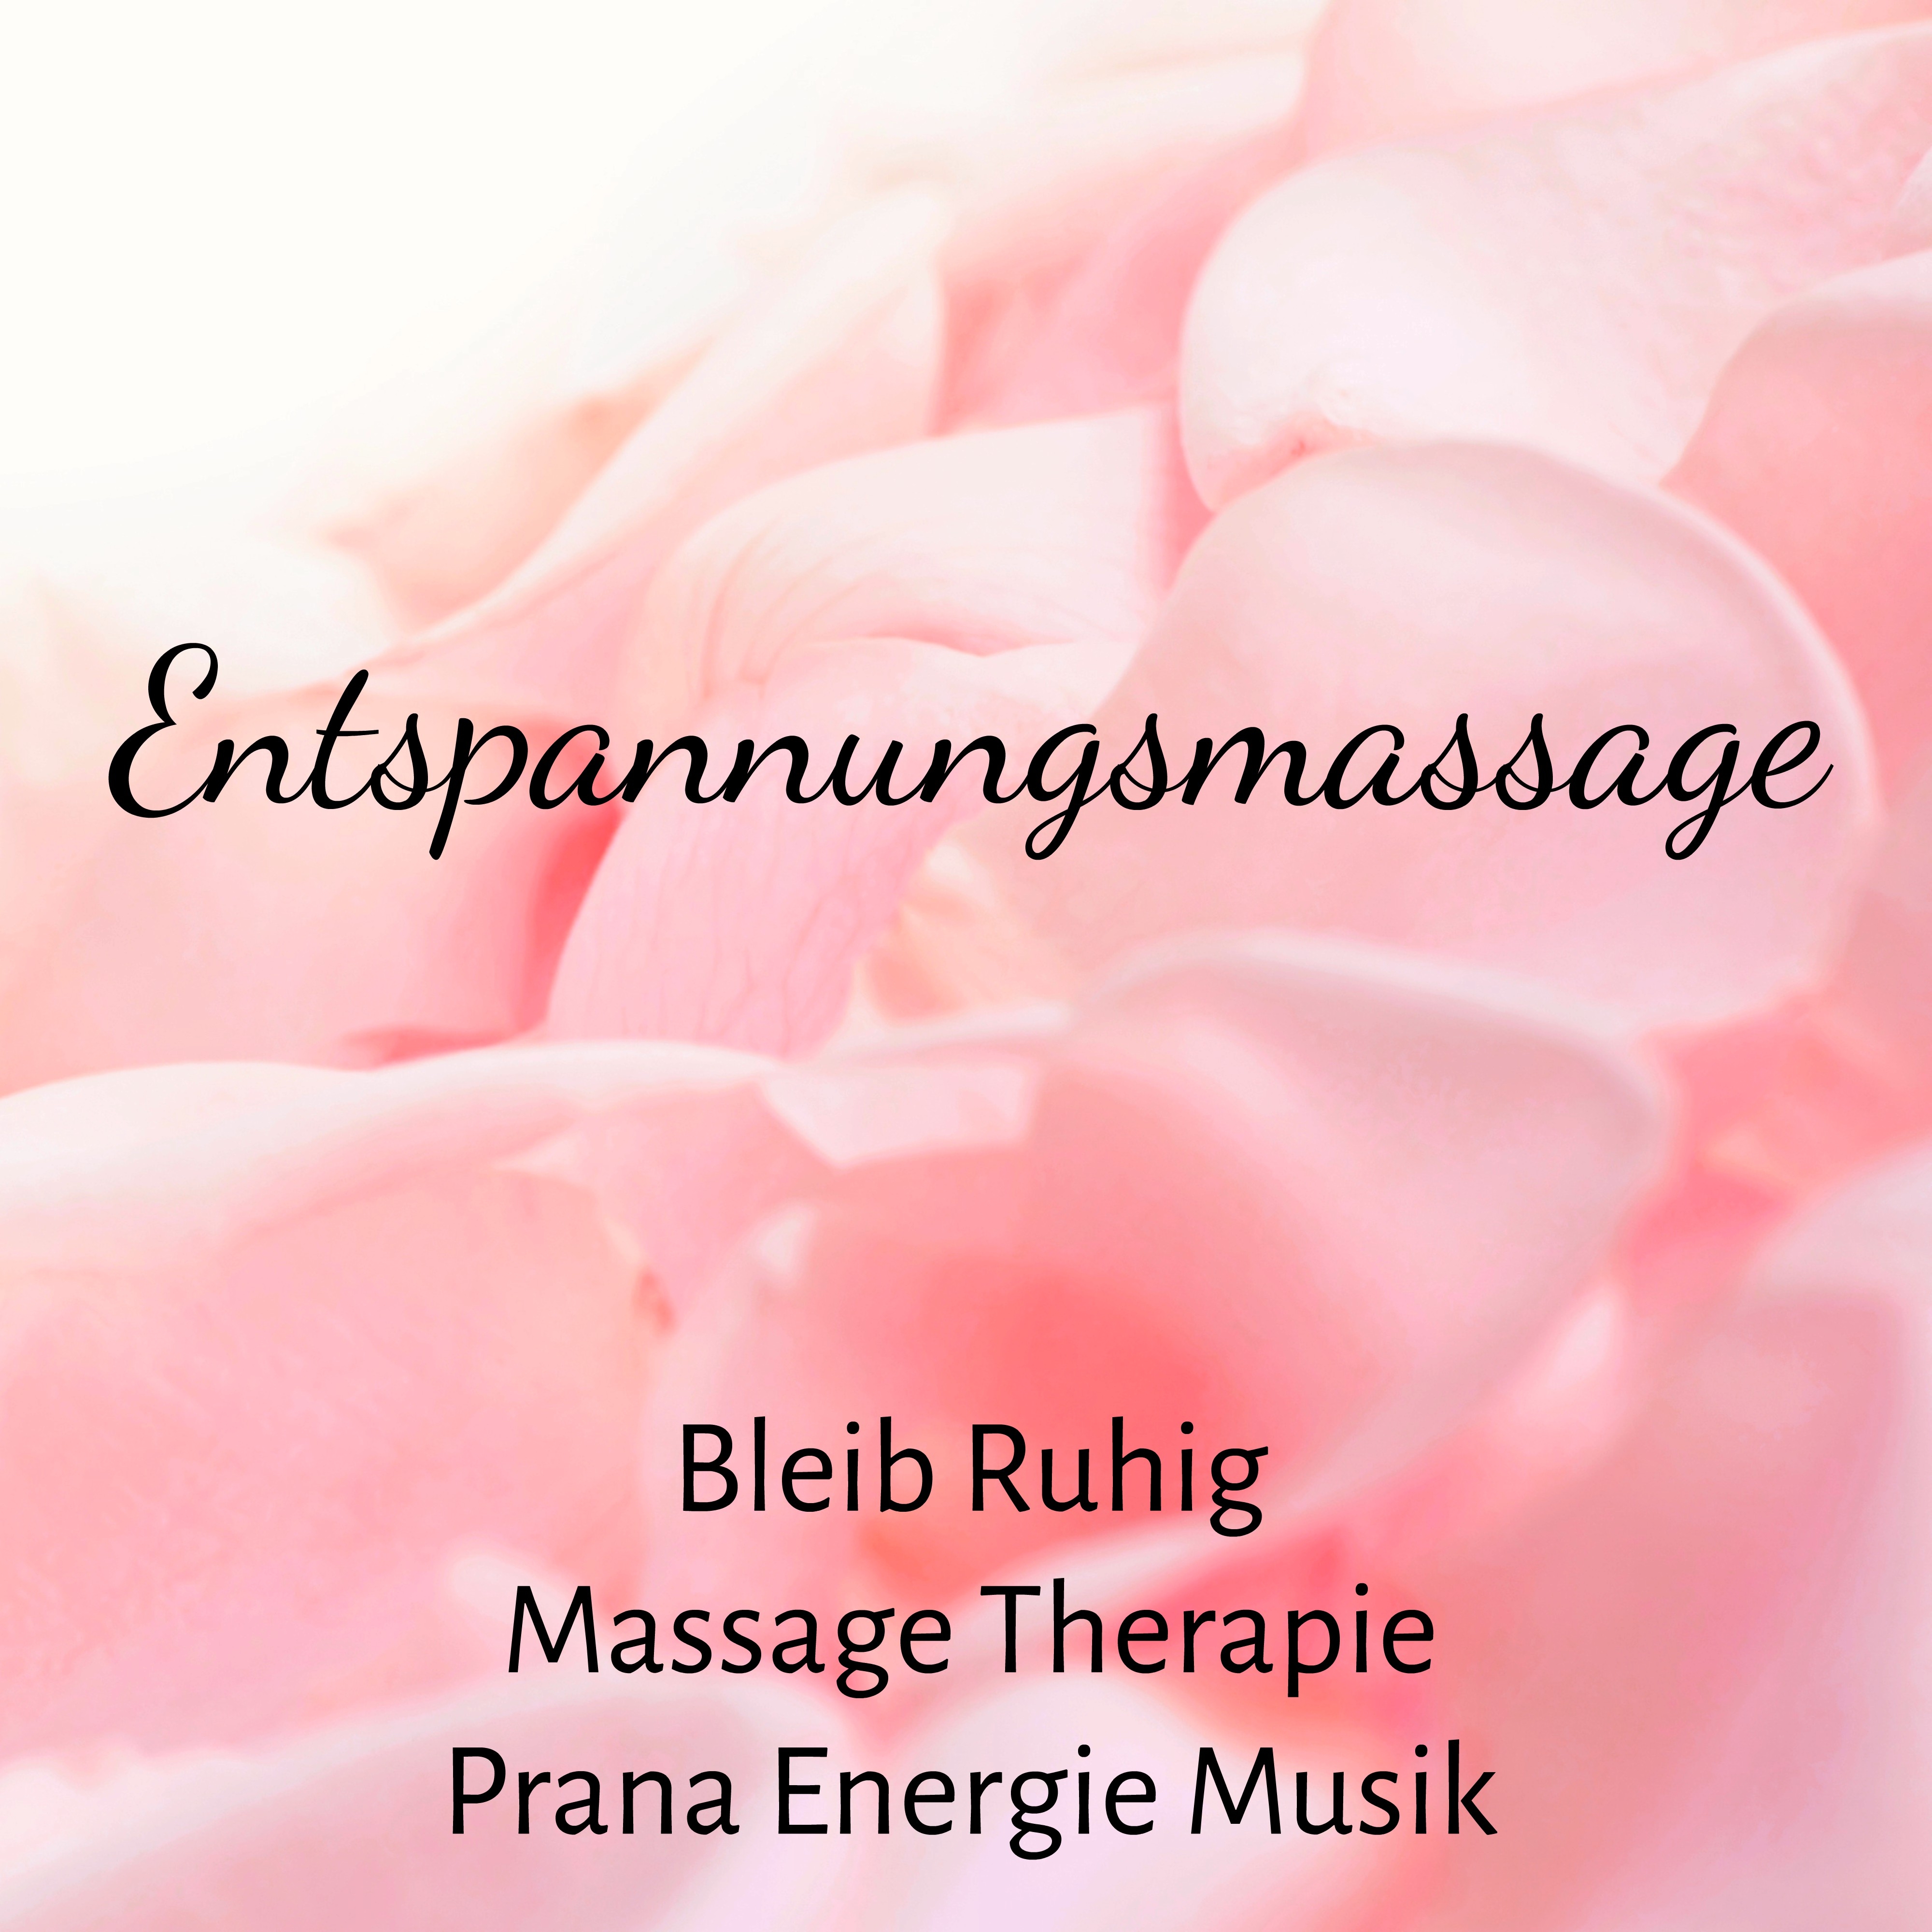 Entspannungsmassage  Bleib Ruhig Massage Therapie Prana Energie Musik mit Achtsamkeitsmeditation Instrumental Gehirnwellen Ger usche